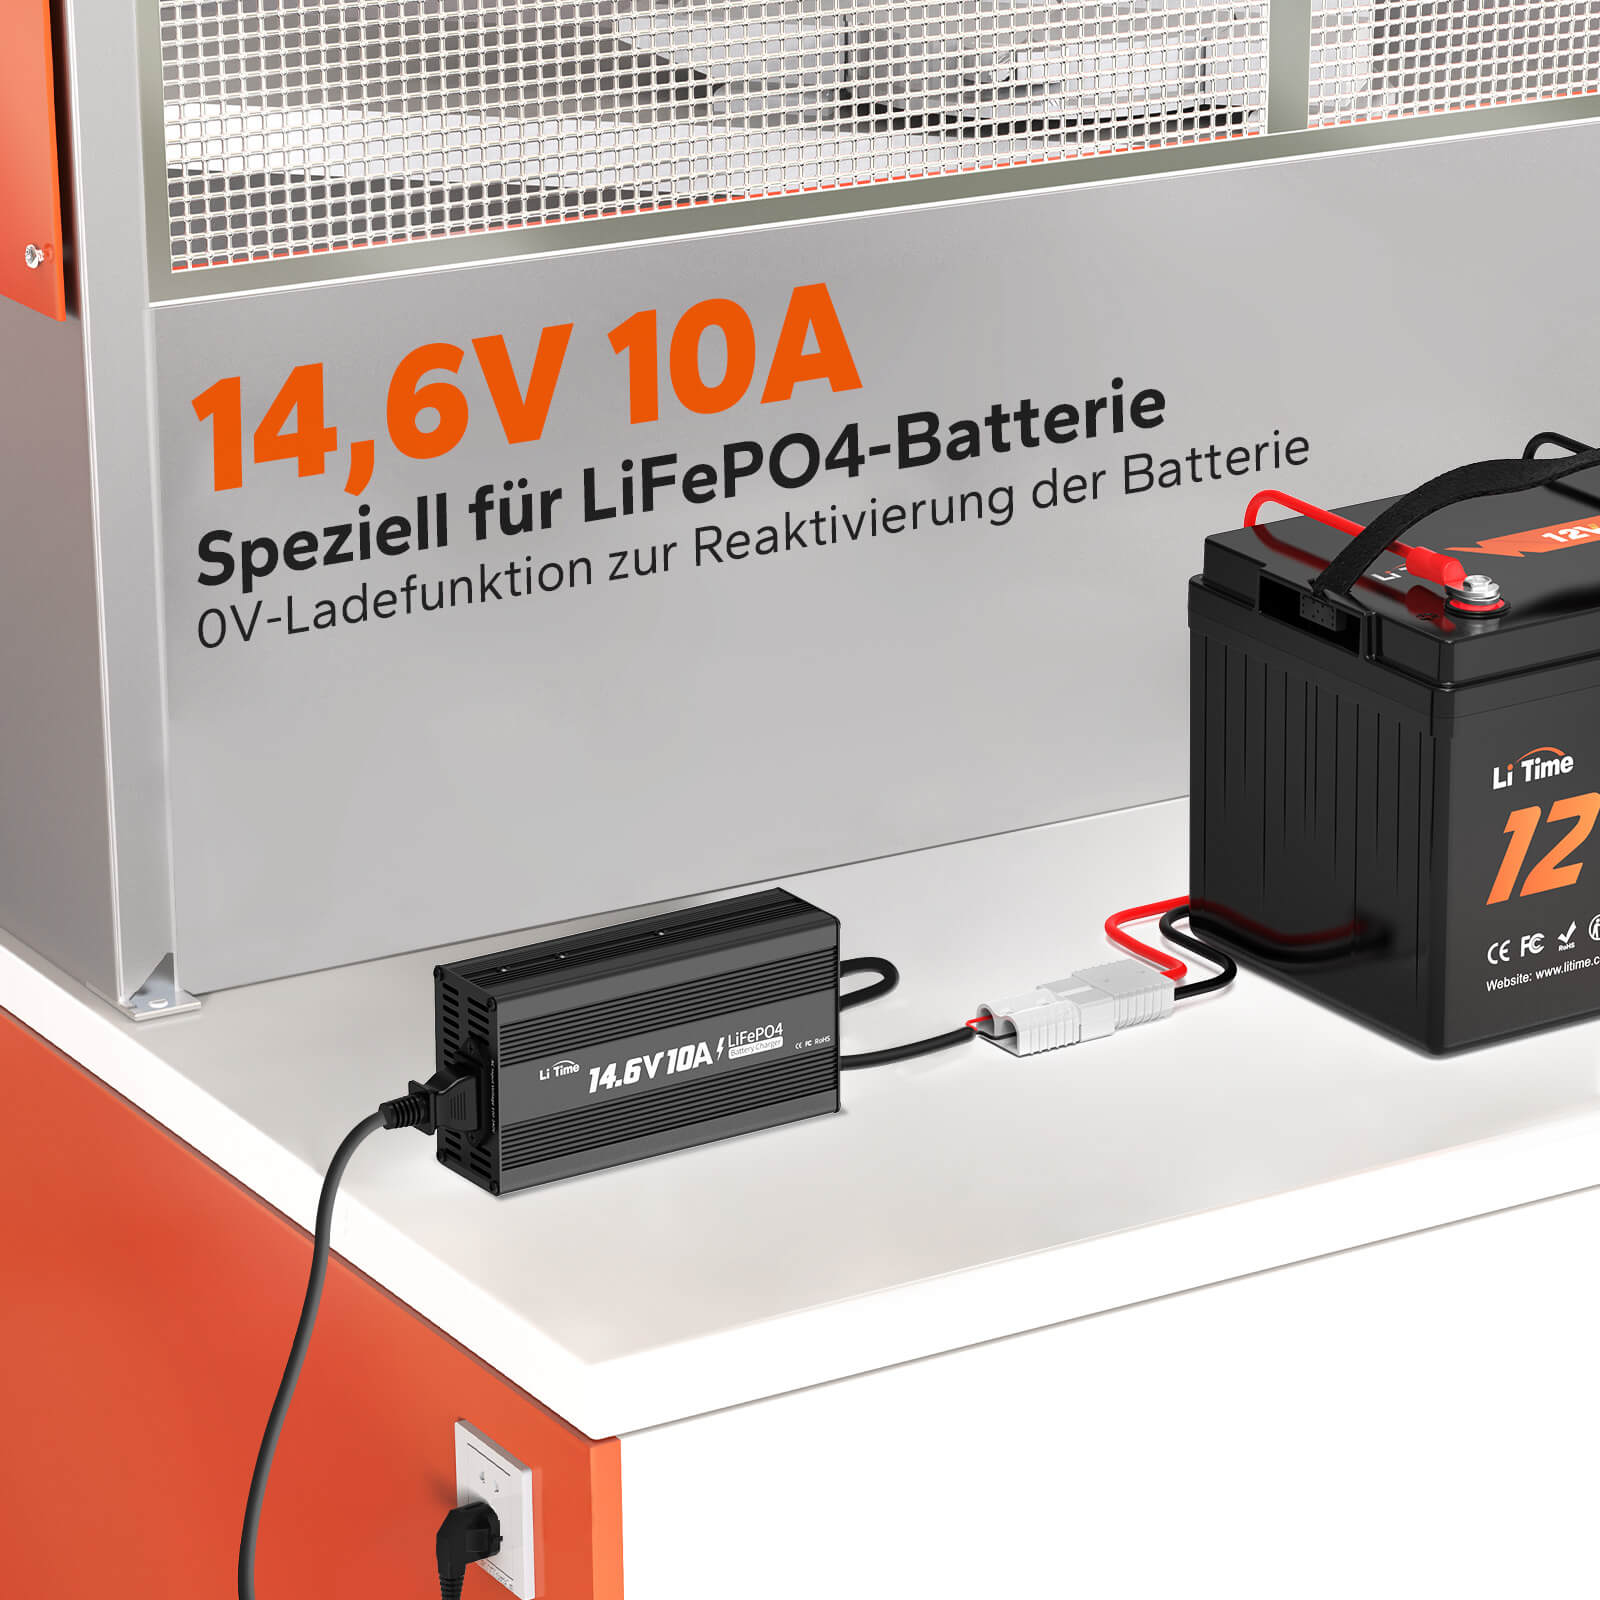 [Vorbestellung] LiTime 14.6V 10A Lithium Batterieladegerät für 12V LiFePO4 Lithium Batterie